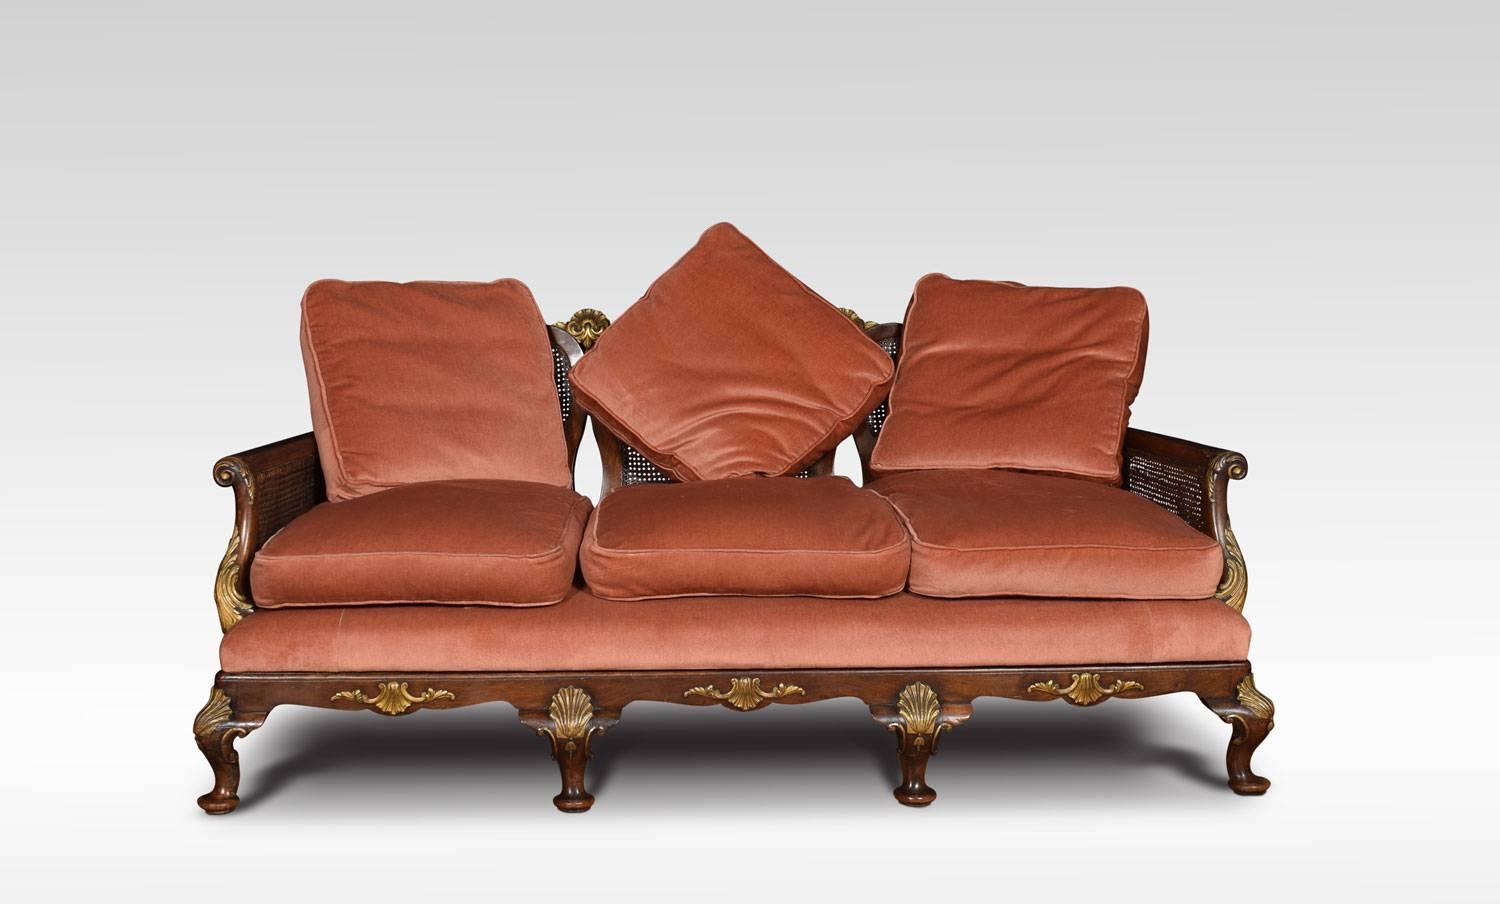 Dreisitziges Sofa aus Nussbaum-Bergère, geformte Rückenlehne über drei vasenförmigen, mit vergoldetem Dekor versehenen Maßwerk-Splats, flankiert von doppelten Rohrseiten und geschwungenen Armen. Der gepolsterte Sitz mit abnehmbaren Sitz- und